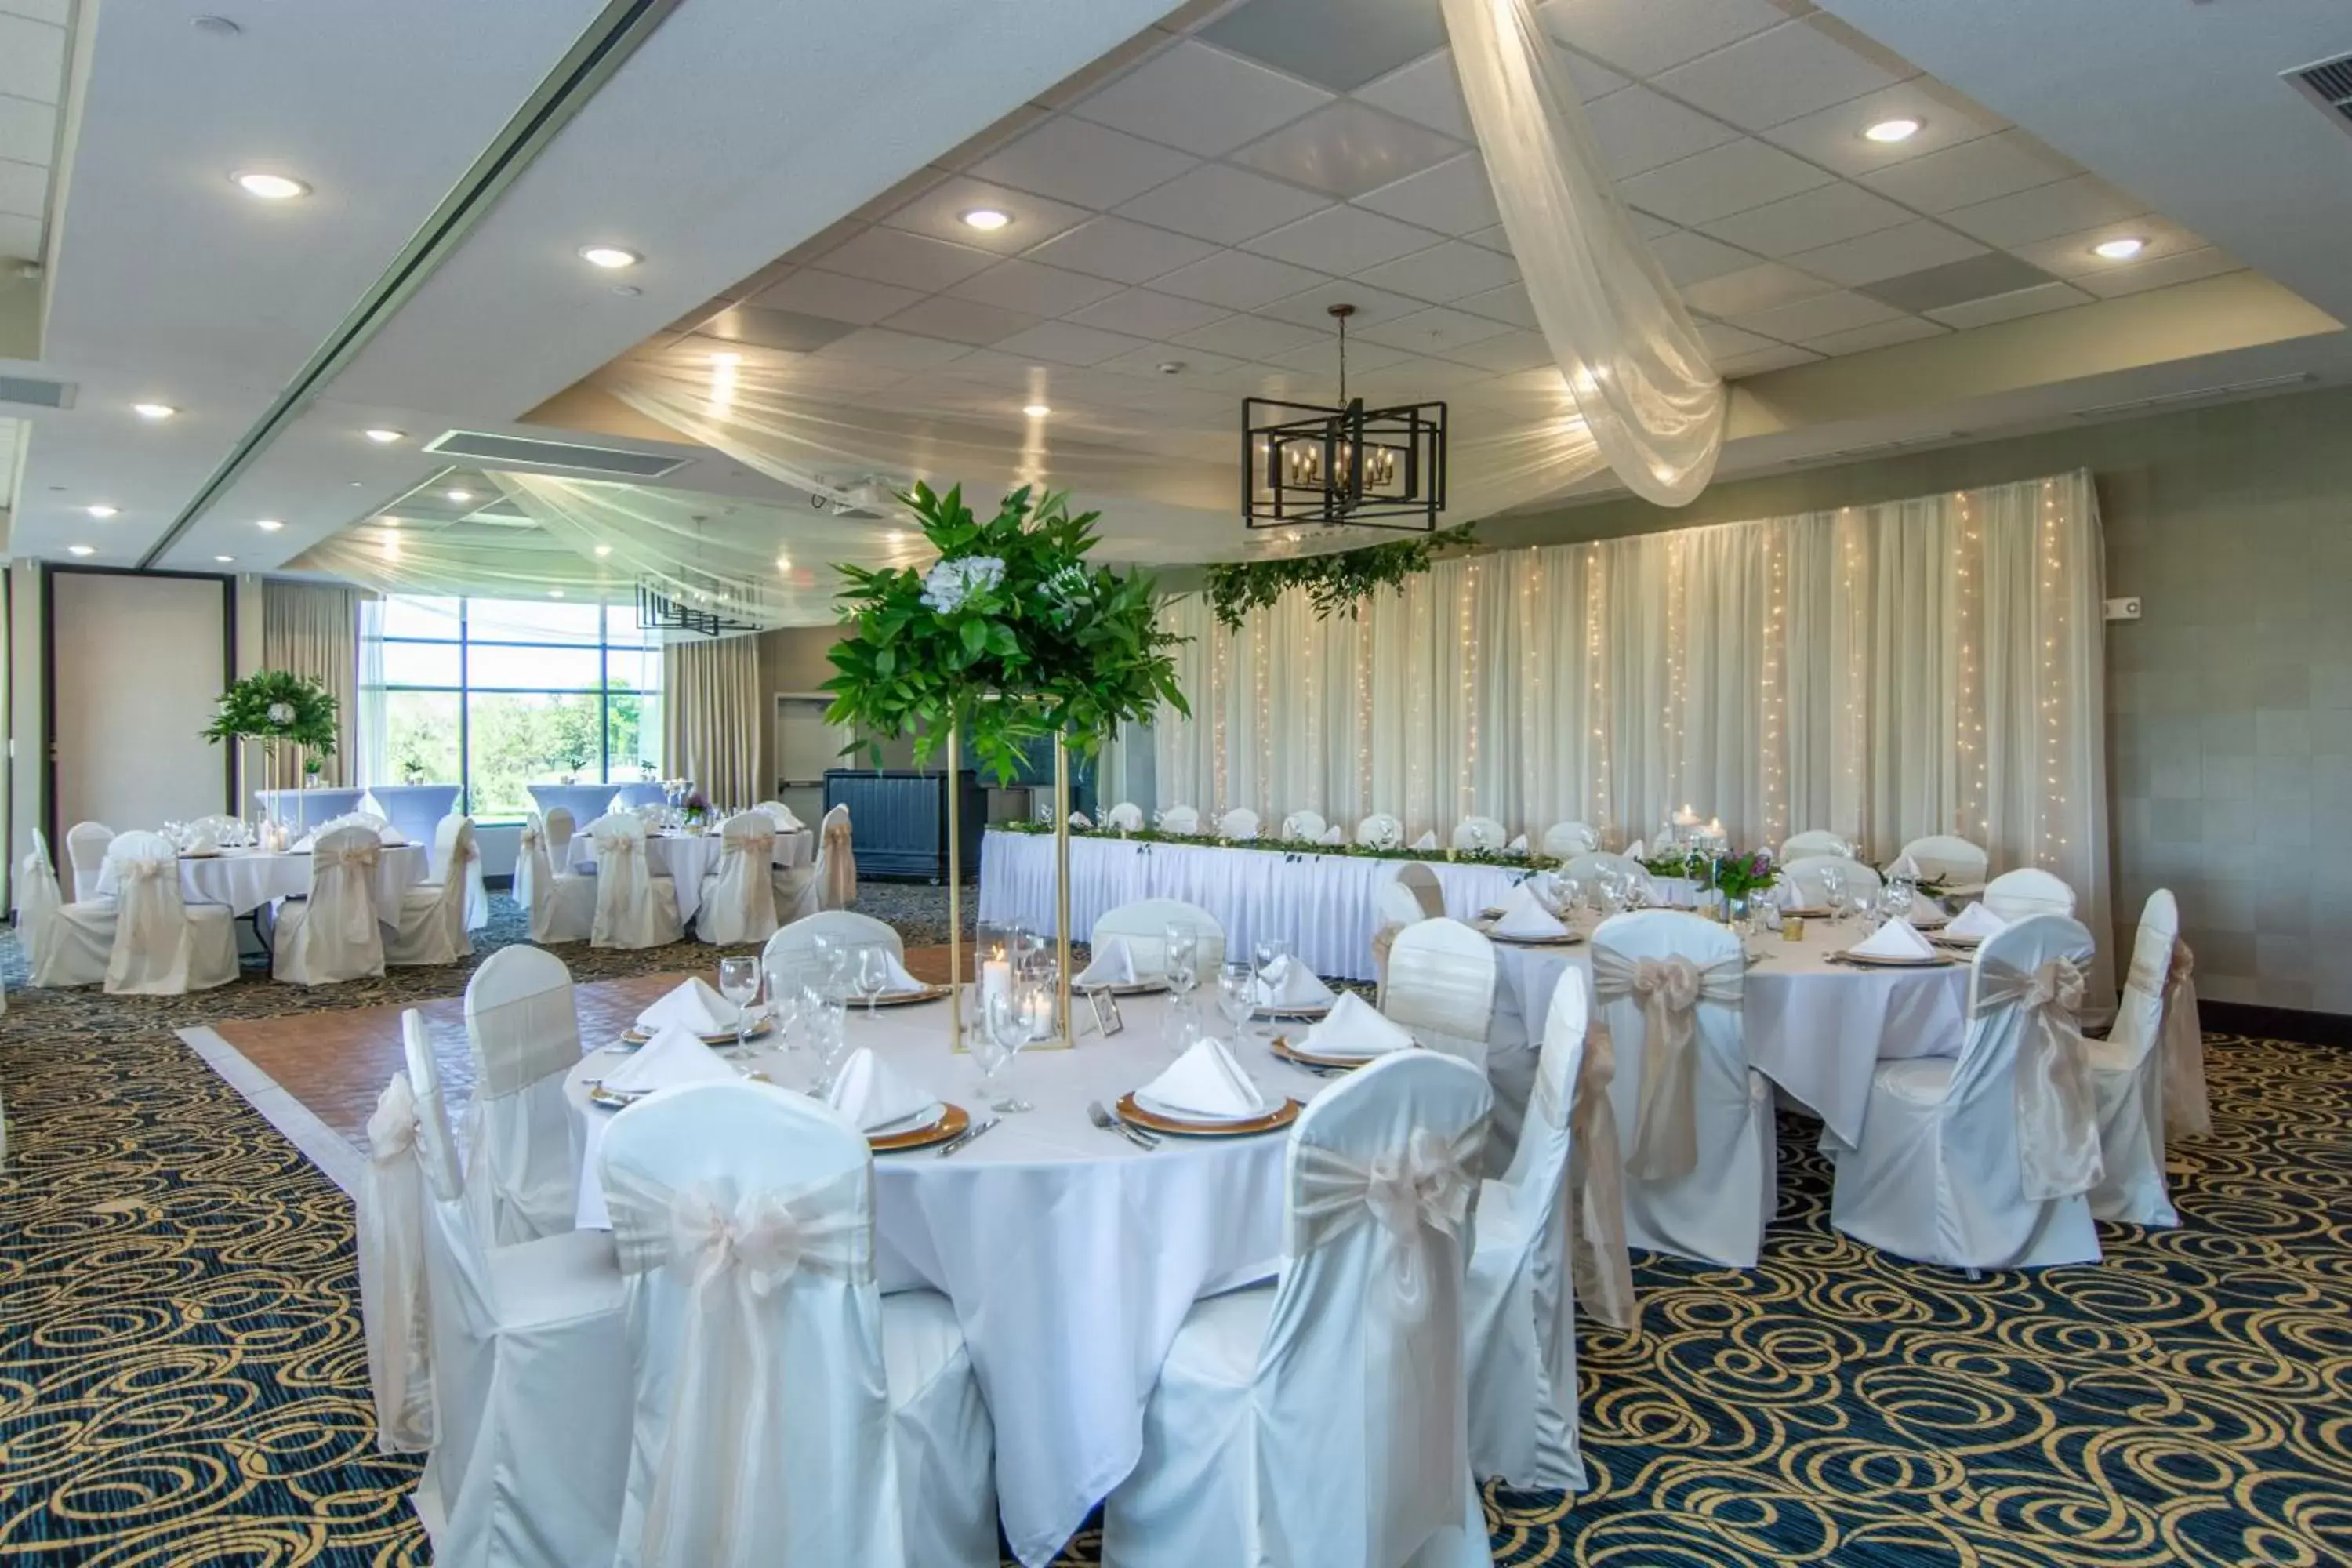 Banquet/Function facilities, Banquet Facilities in GrandStay Hotel & Suites